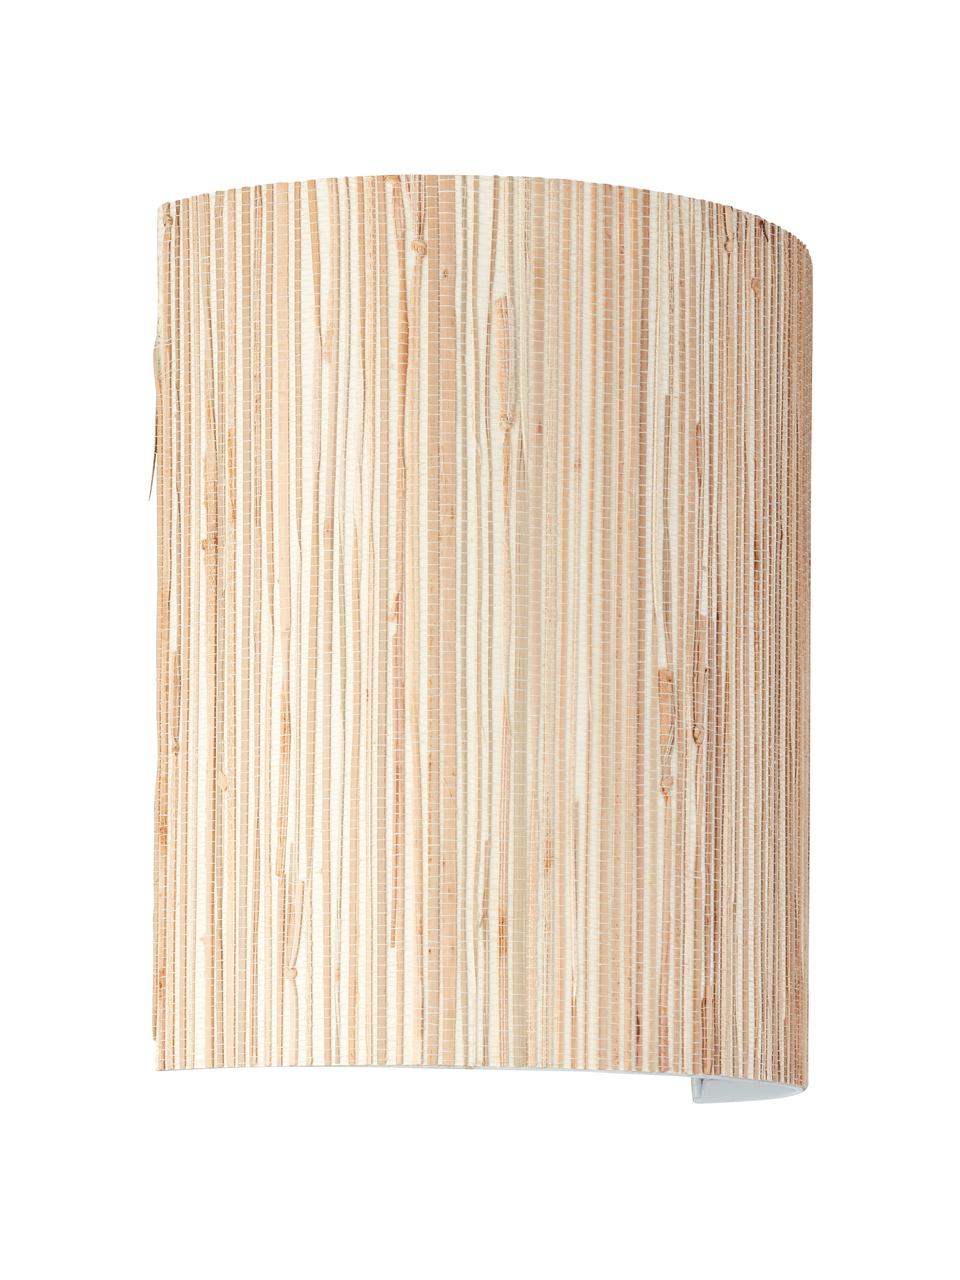 Wandlamp Wimea van zeegras, Lampenkap: zeegras, Licht hout, B 23 x D 12 cm